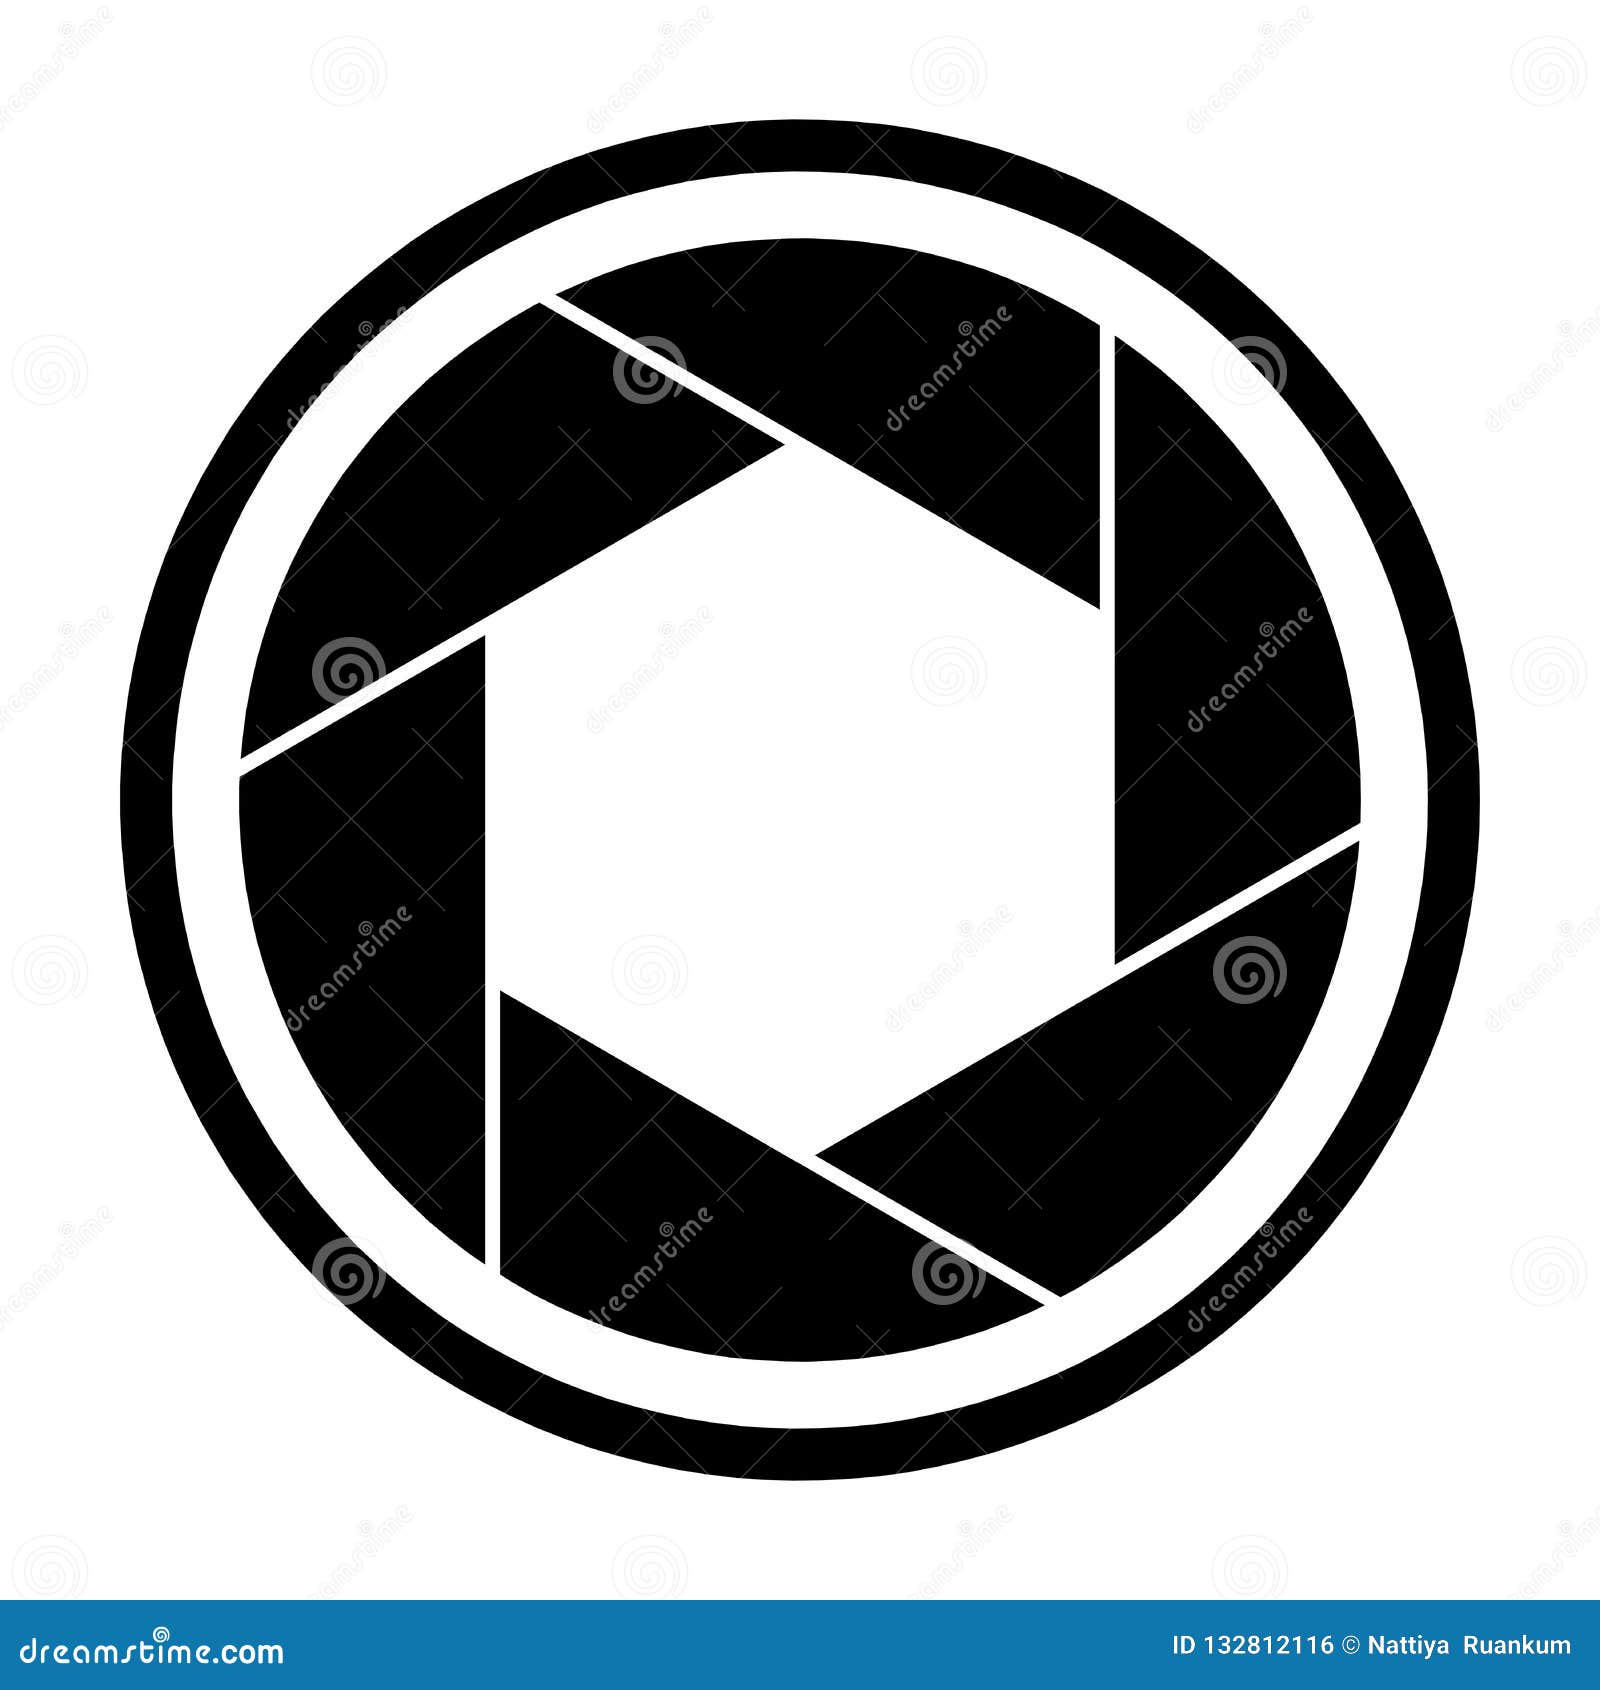 camera shutter logo vector